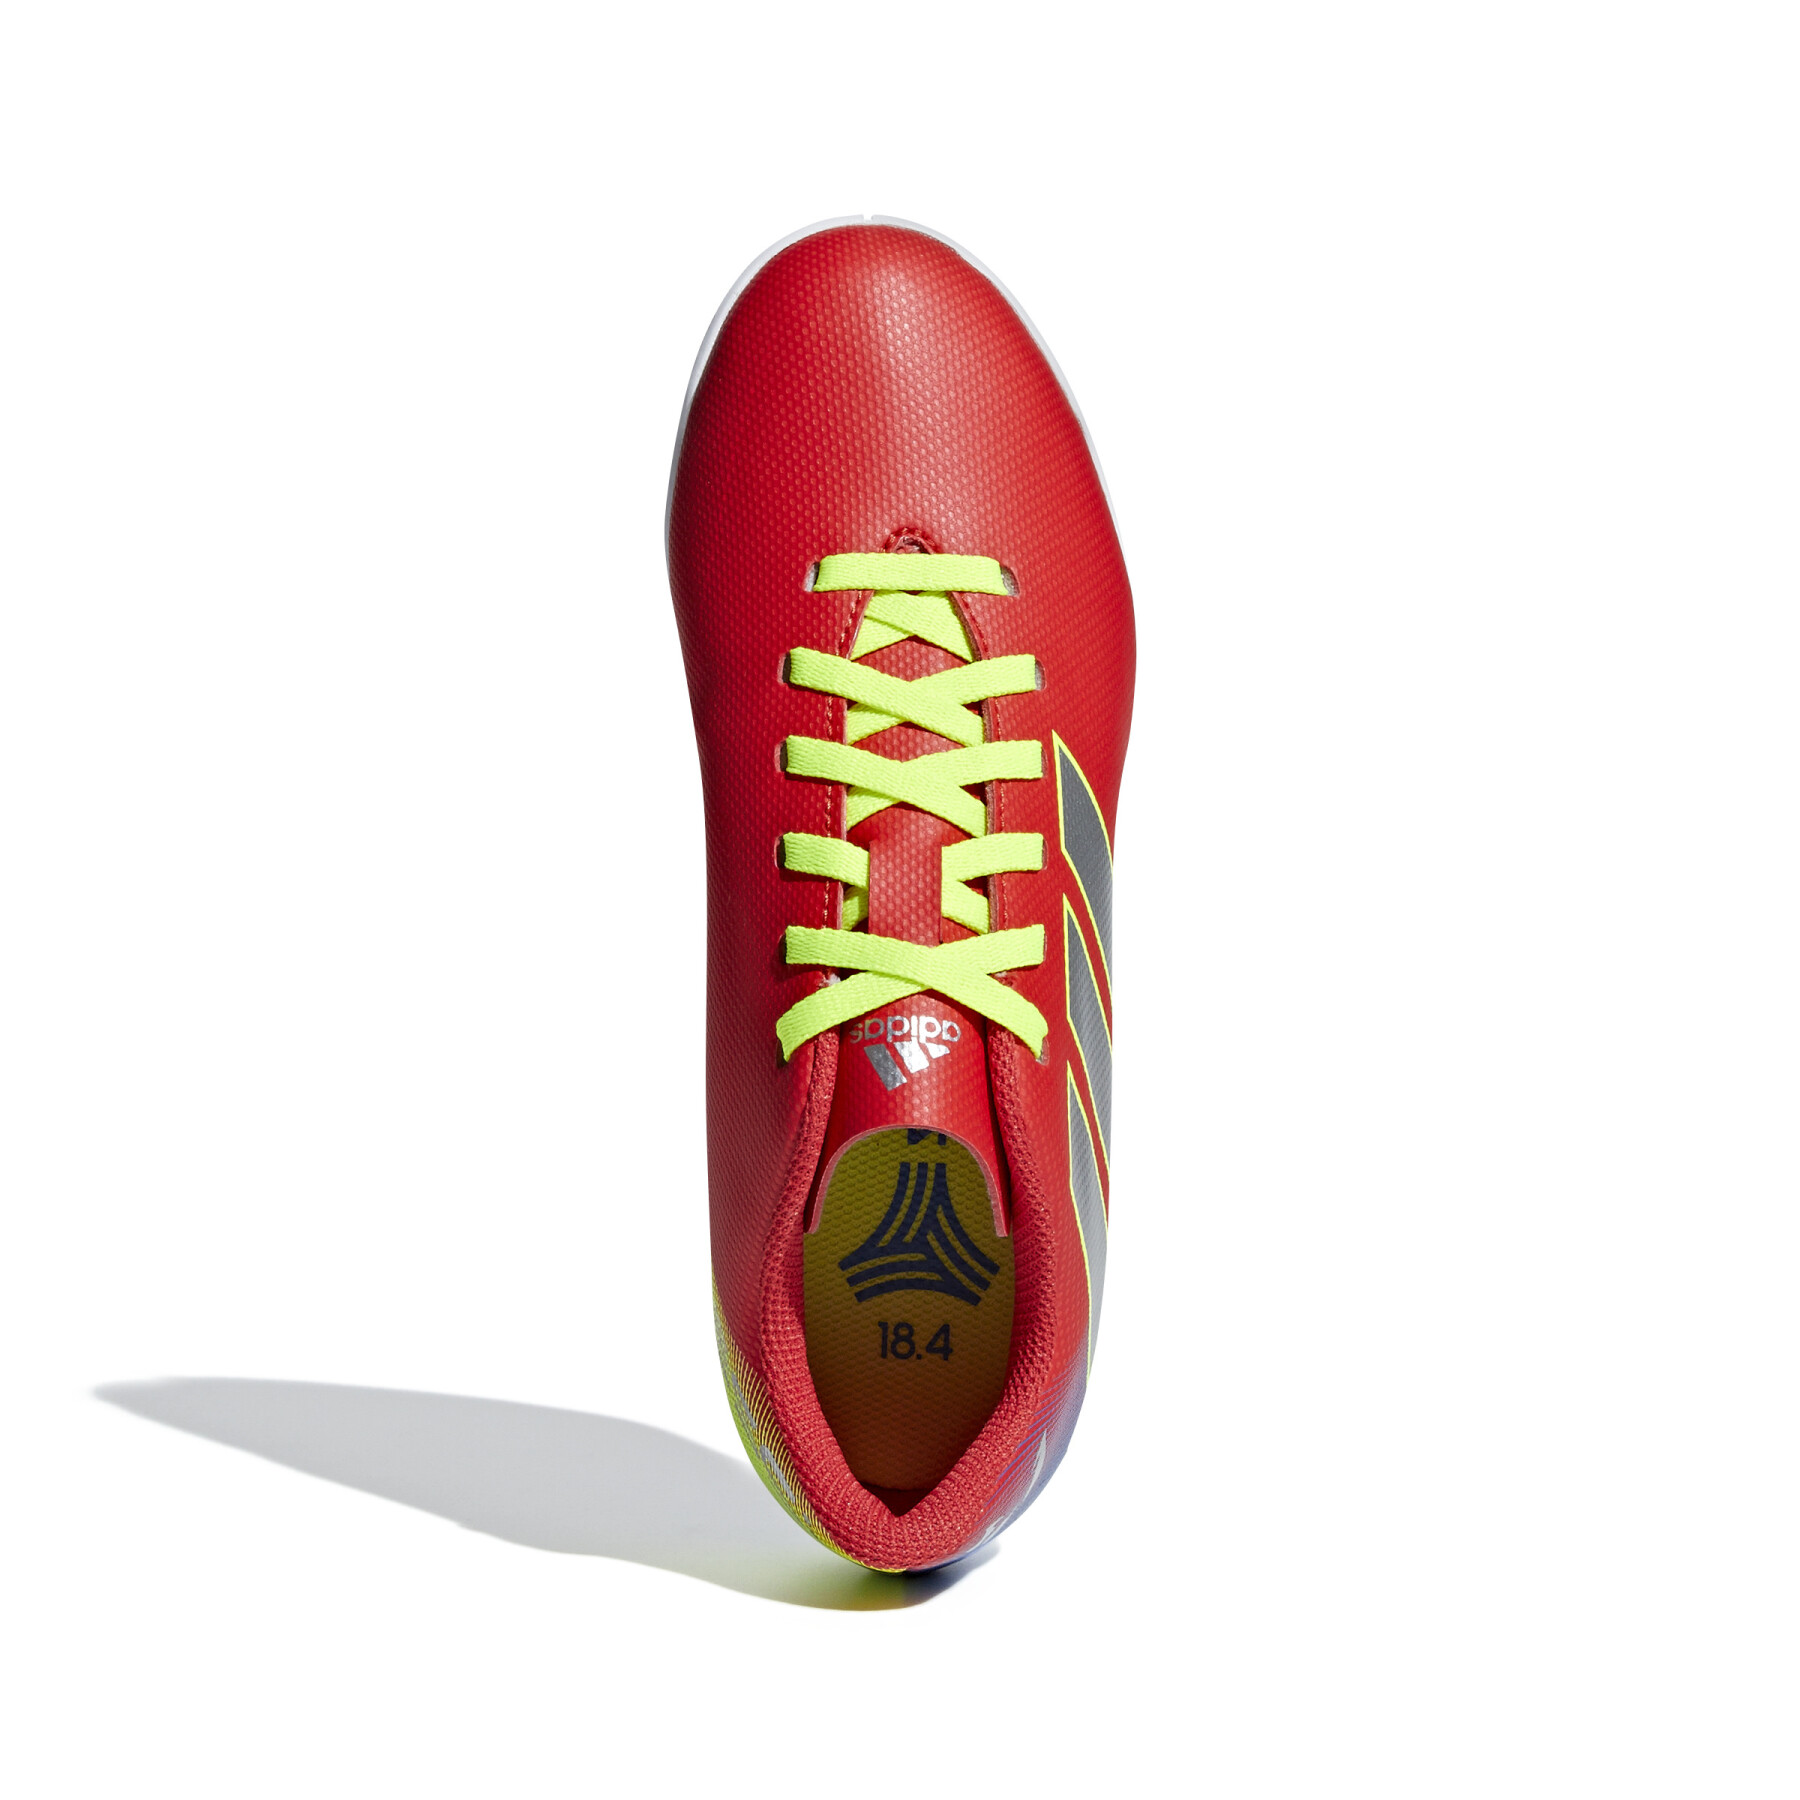 Sapatos de futebol para crianças adidas Nemeziz Messi Tango 18.4 IN